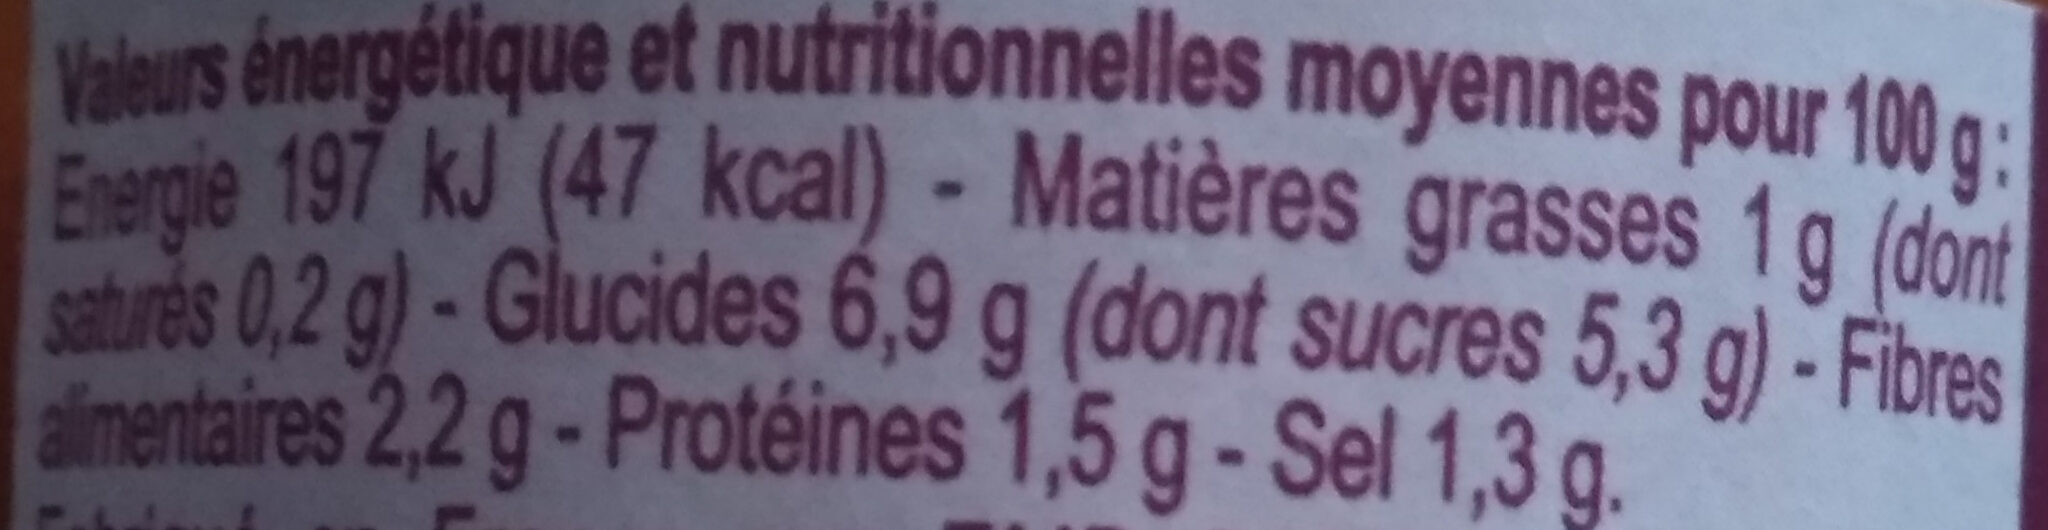 Provençale - Tableau nutritionnel